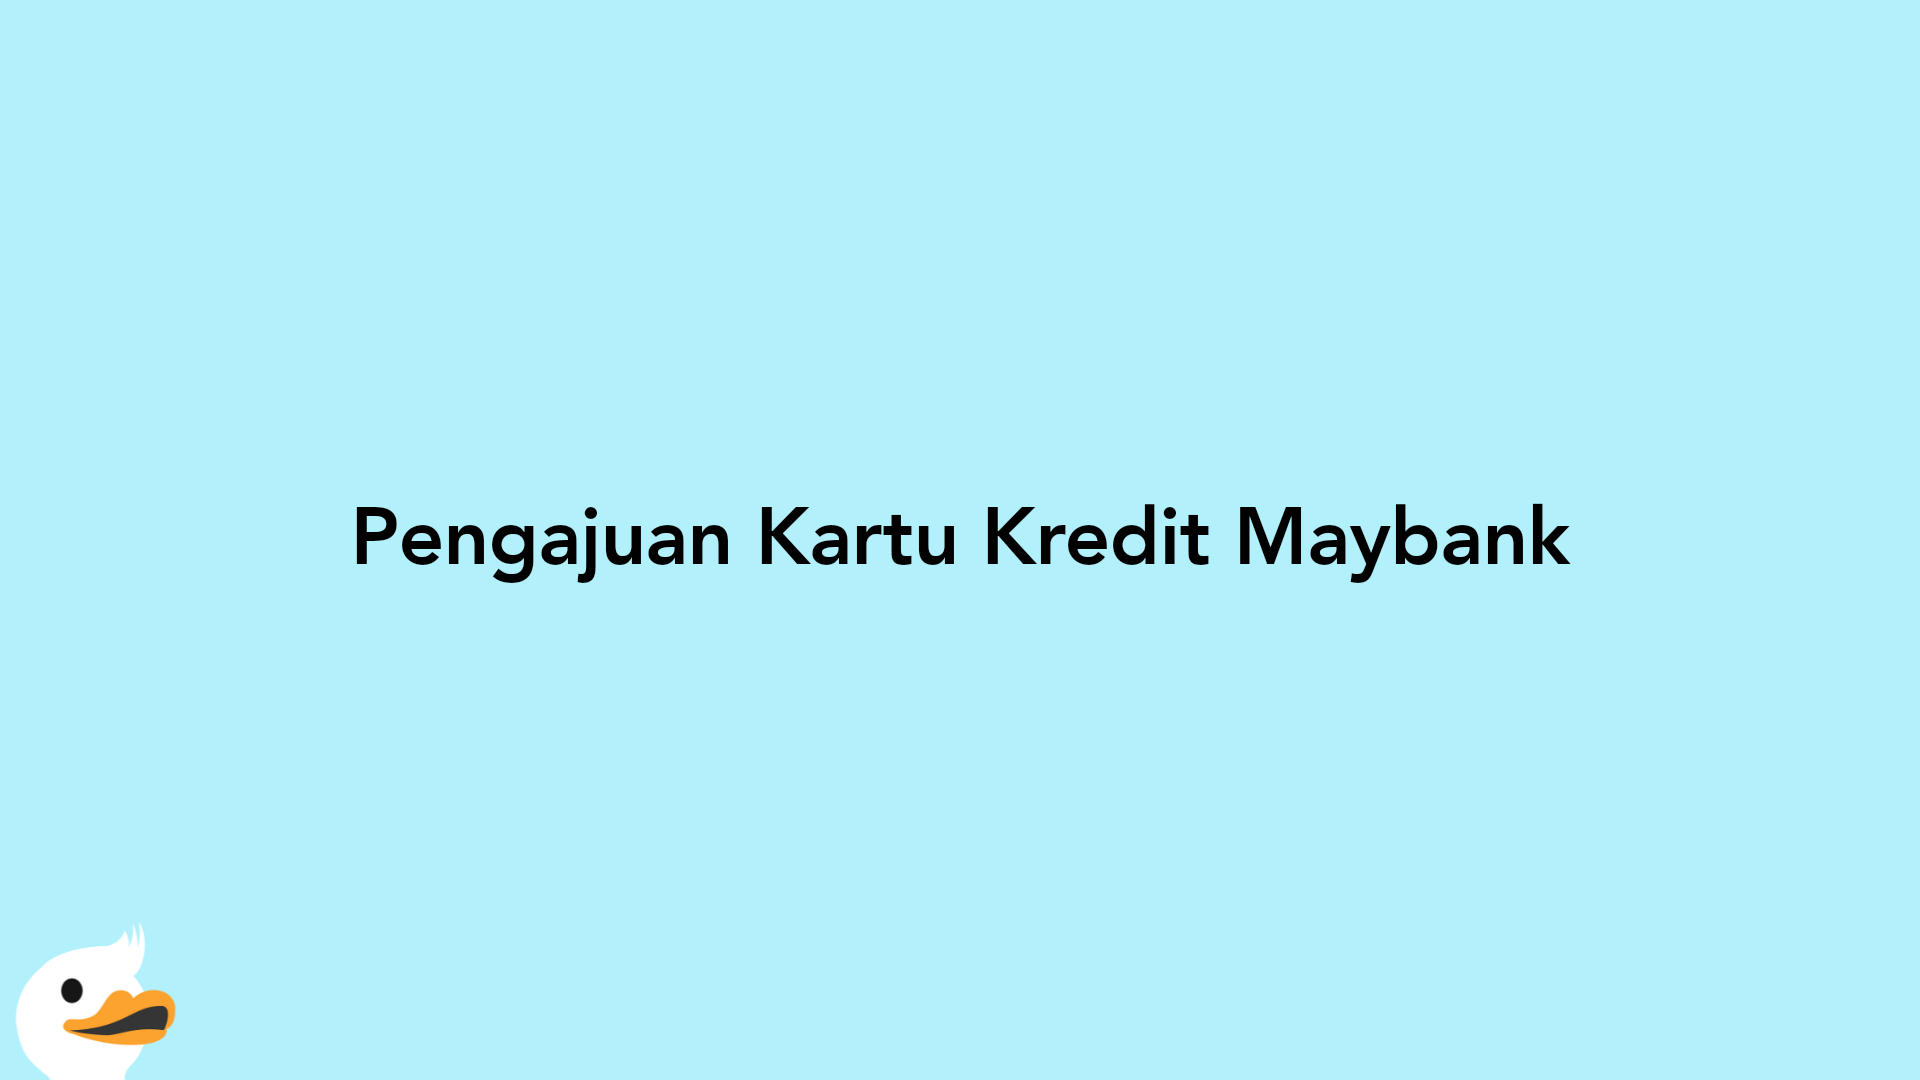 Pengajuan Kartu Kredit Maybank